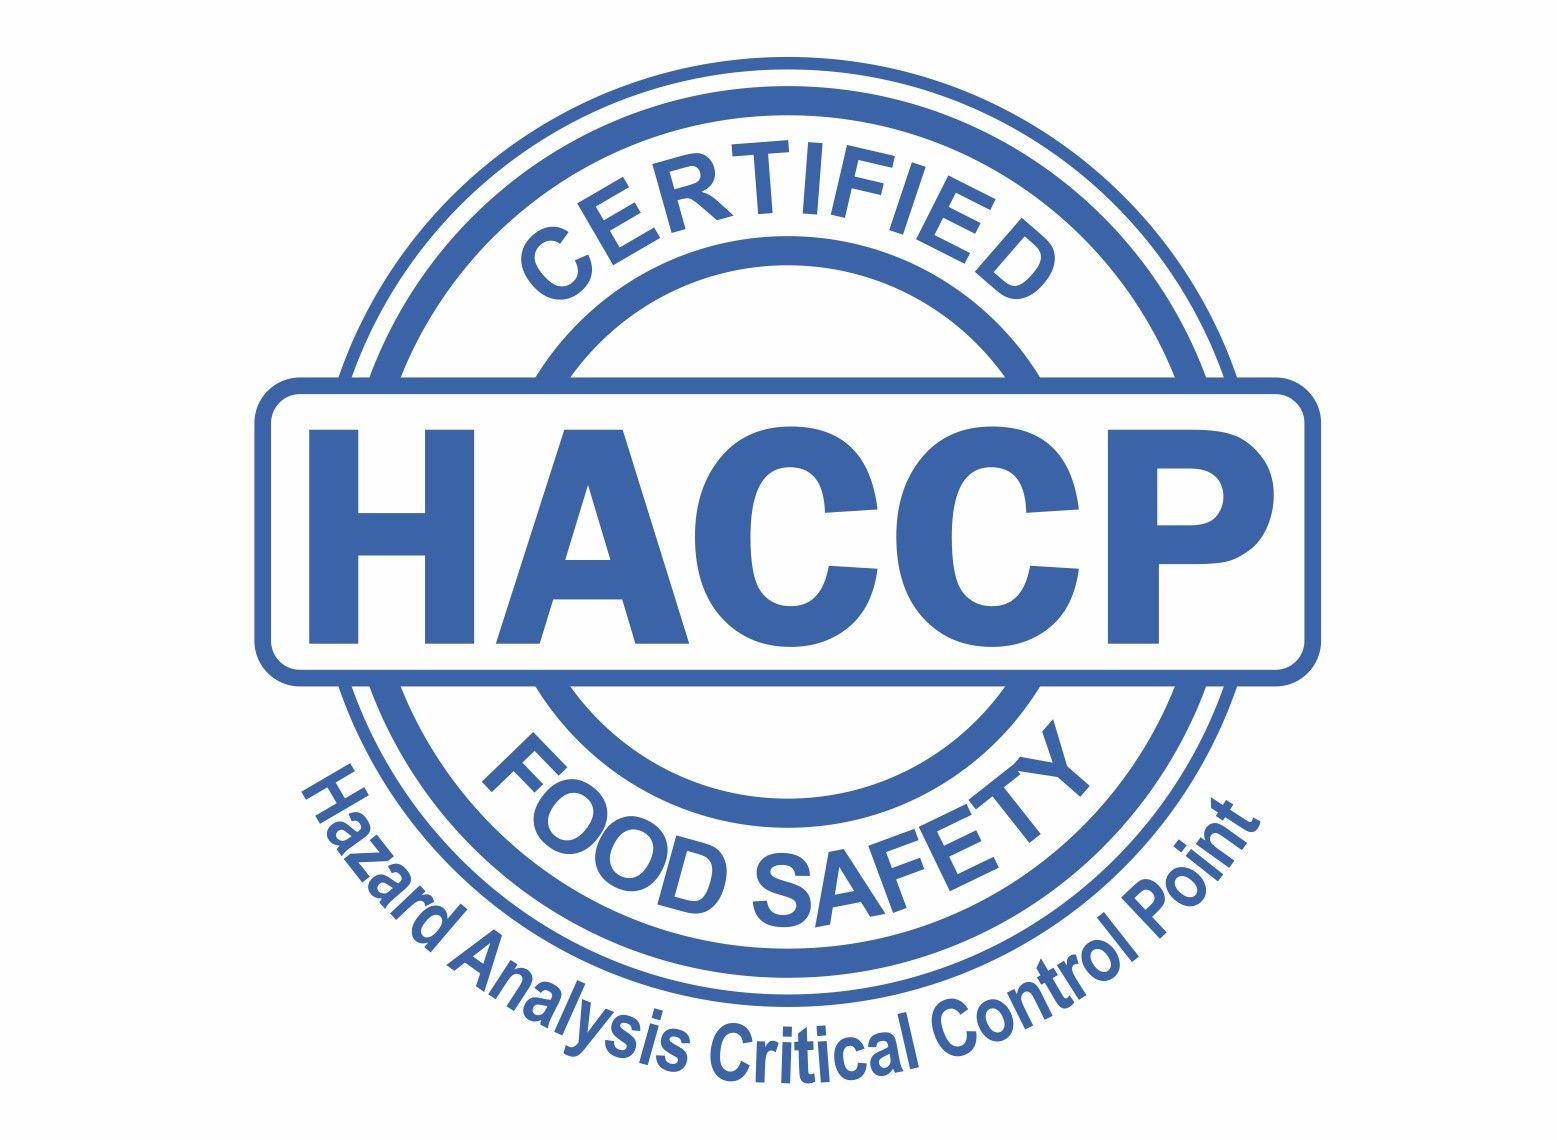 HACCP Logo - Covertech Flexible Packaging – Covertech Flexible Packaging Inc. is ...